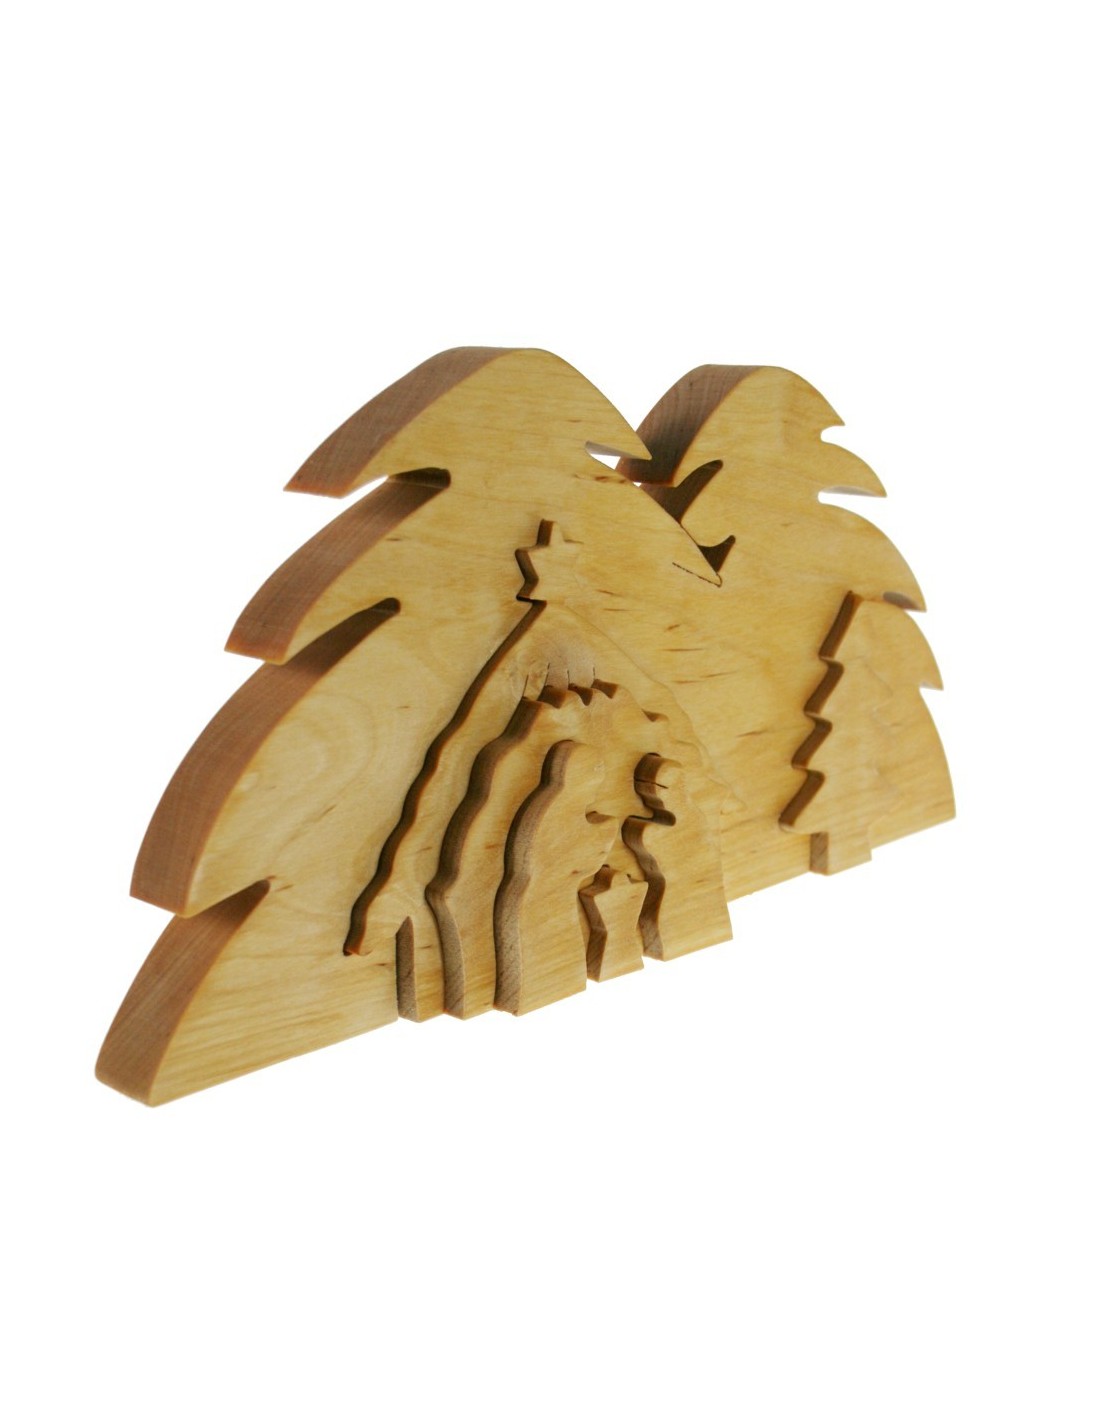 Belén tallado en 3D elaborado en madera natural decoración navideña de estilo nórdico